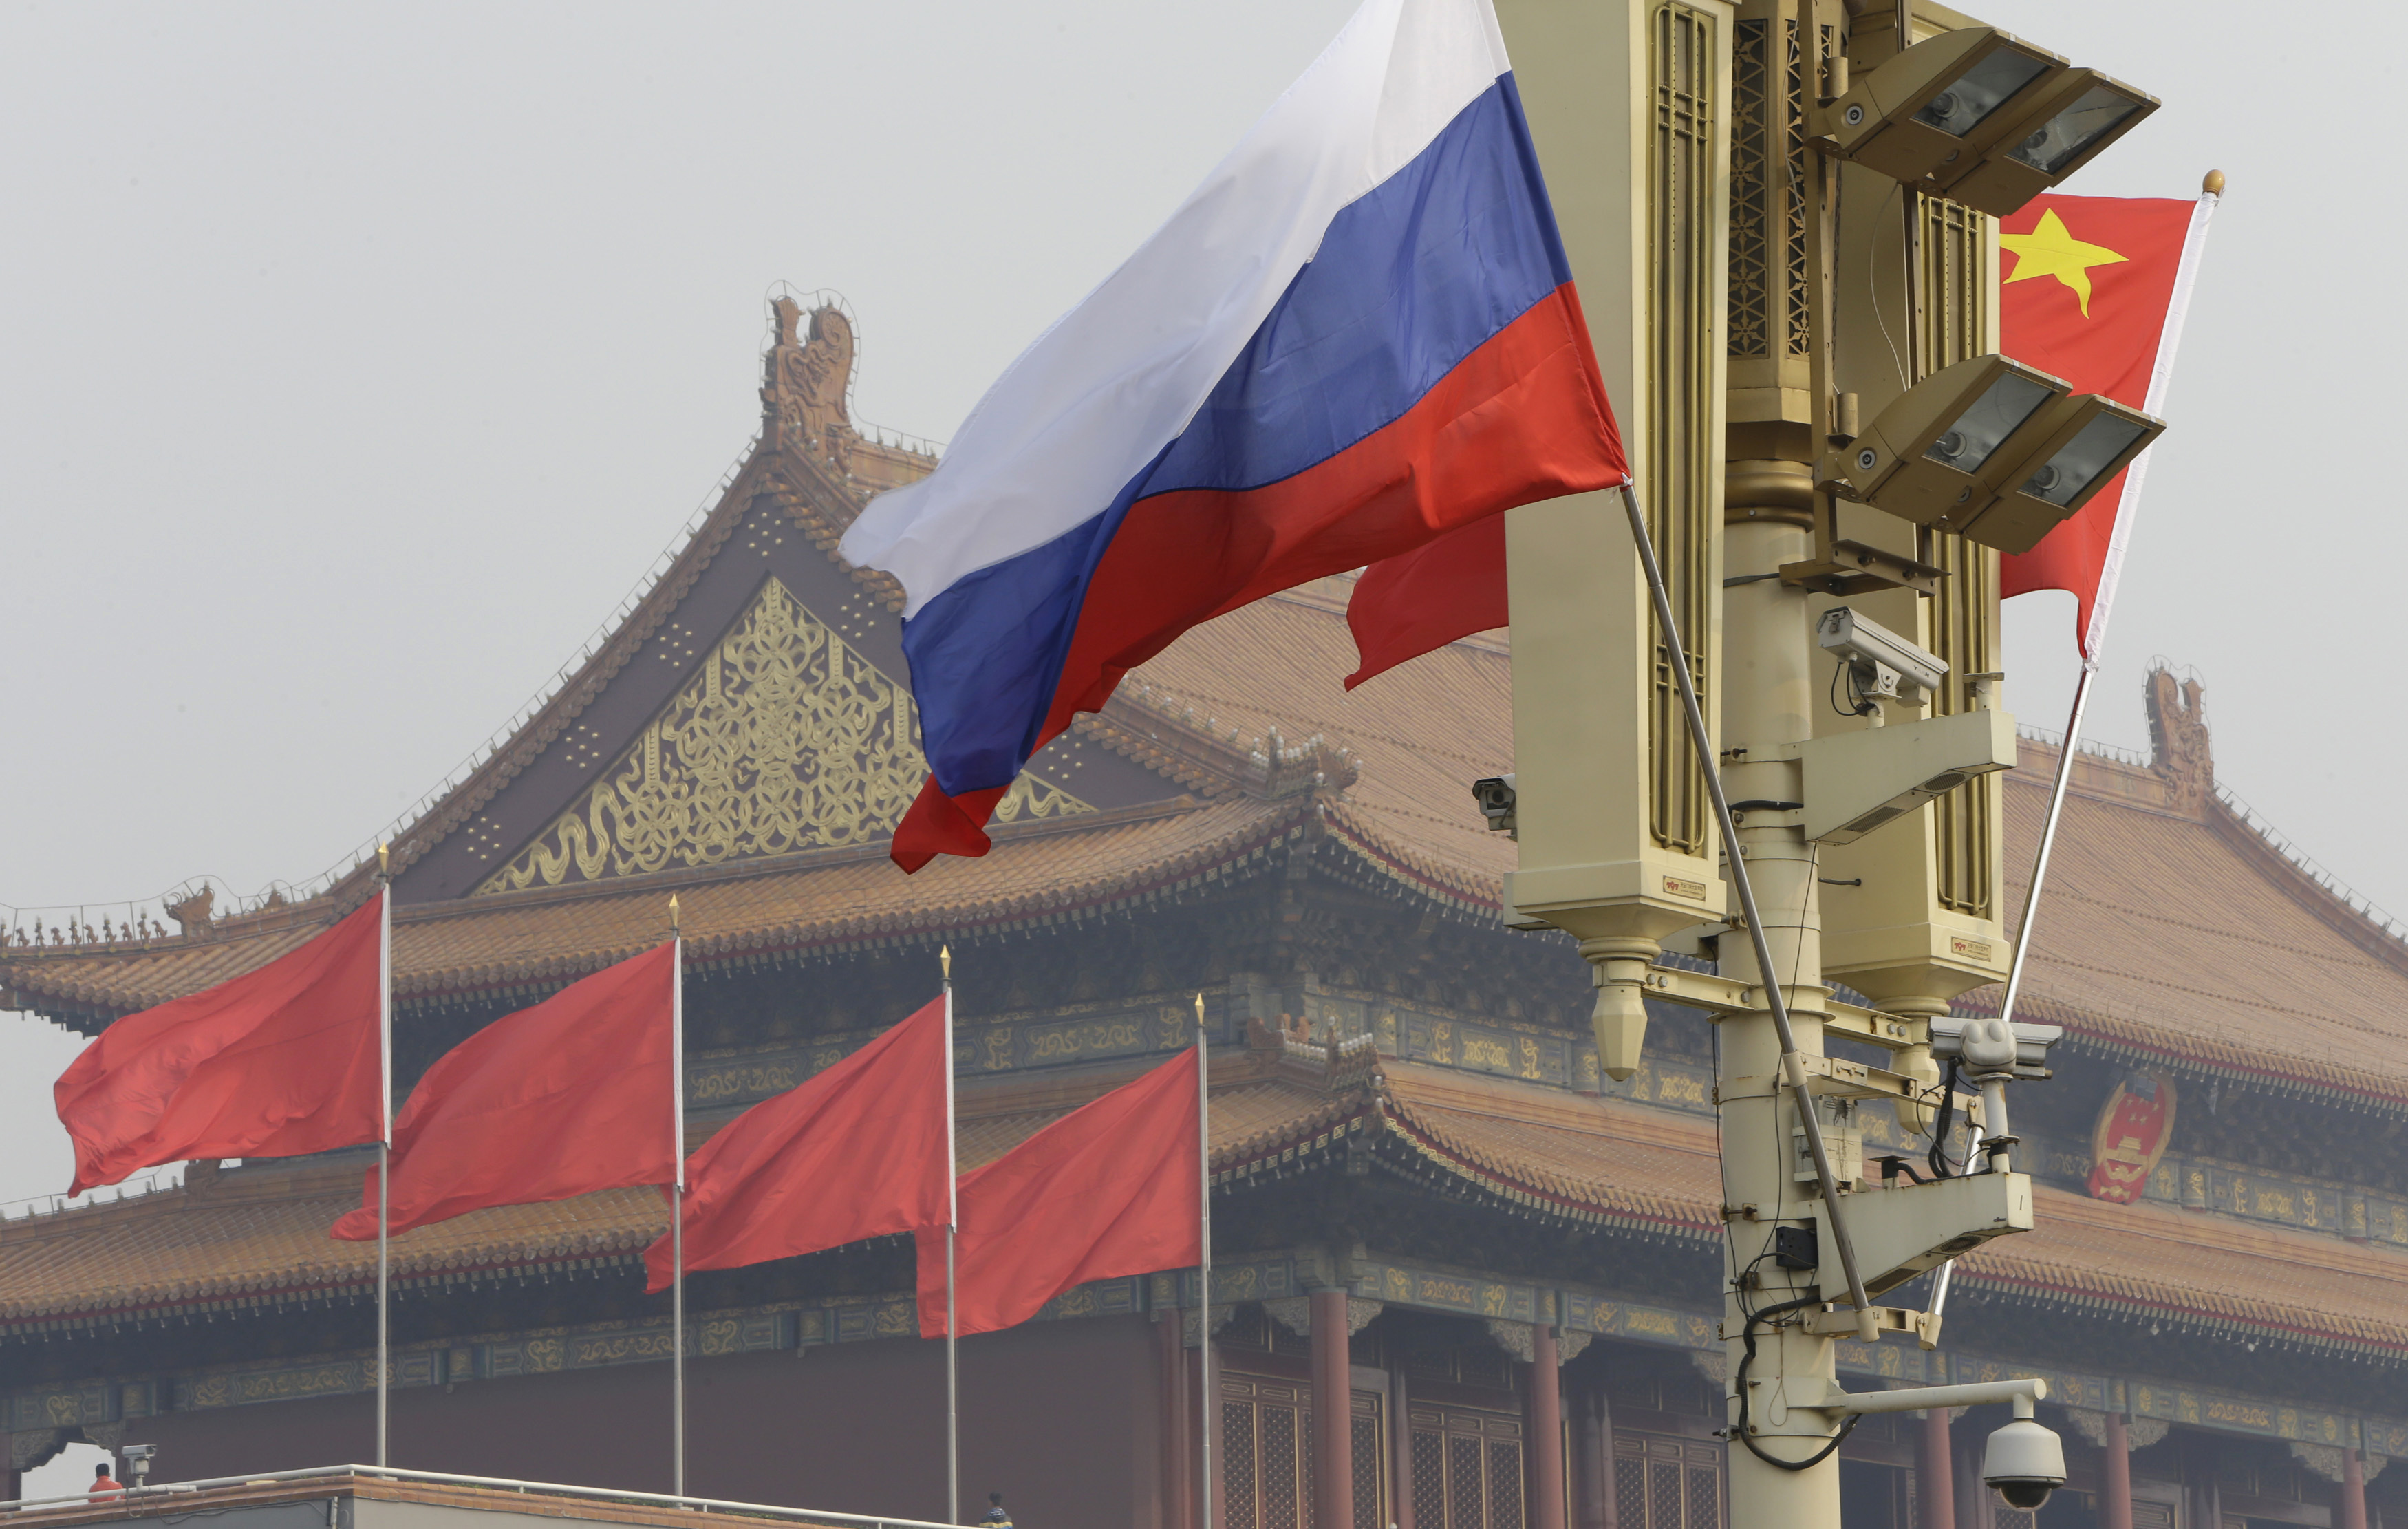 Pékin prêt à entrer (ou augmenter ses parts) dans le capital des groupes énergétiques russes